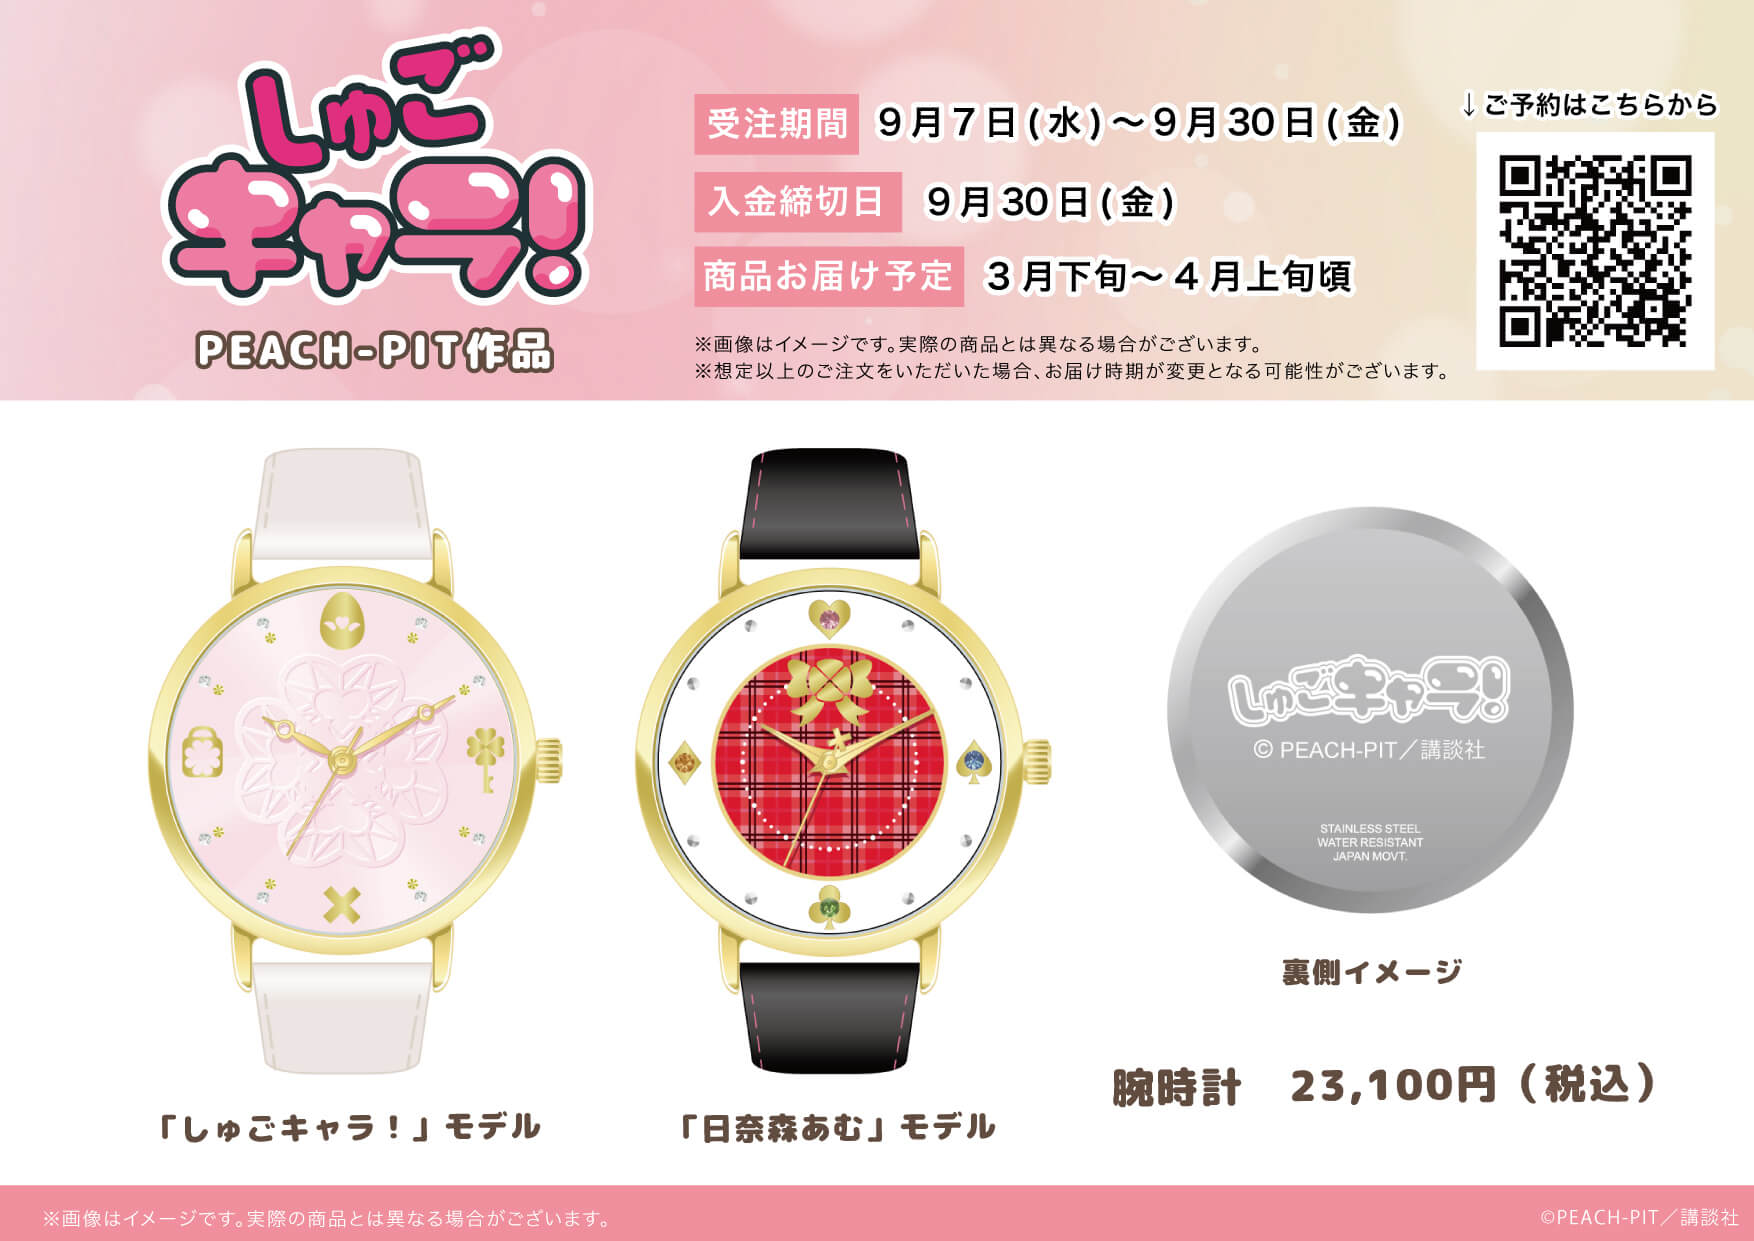 Peach Pitの大人気作 しゅごキャラ から腕時計が登場 腕時計は作品の世界観を詰め込んだ しゅごキャラ モデルと 主人公の特徴をあしらった 日奈森あむ モデルの２種類 株式会社a3のプレスリリース